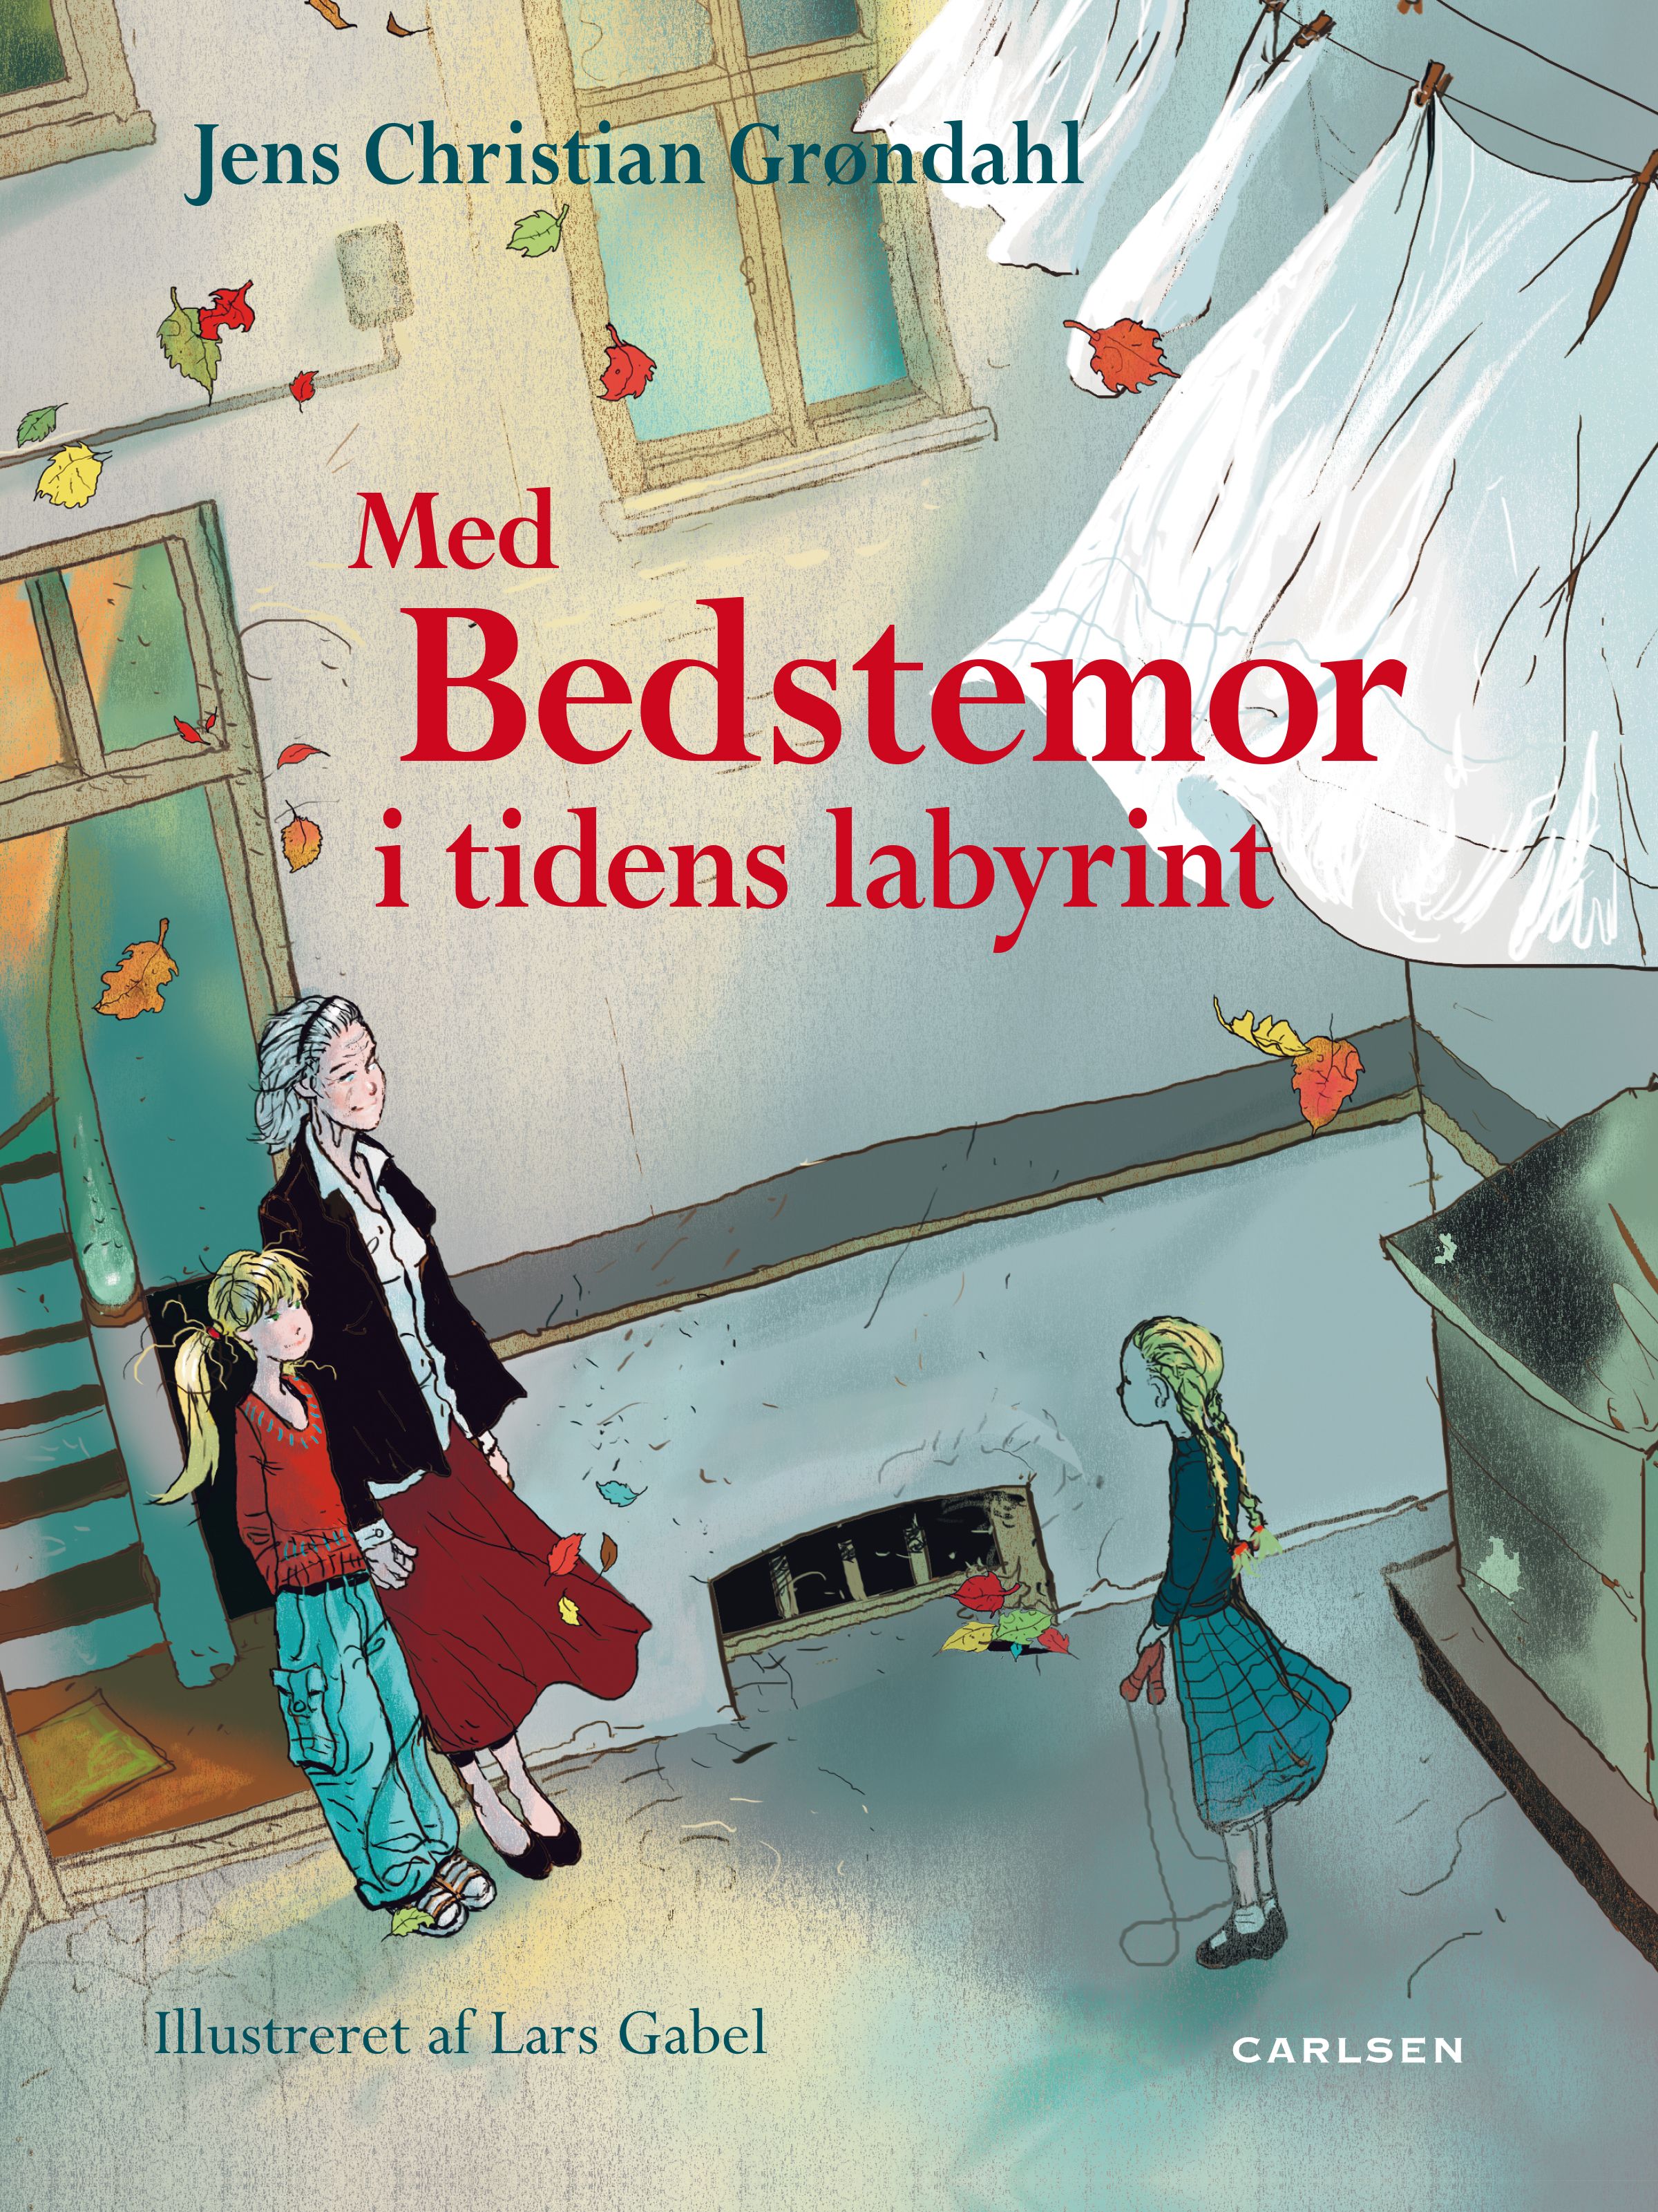 Med bedstemor i tidens labyrint, e-bok av Jens Christian Grøndahl